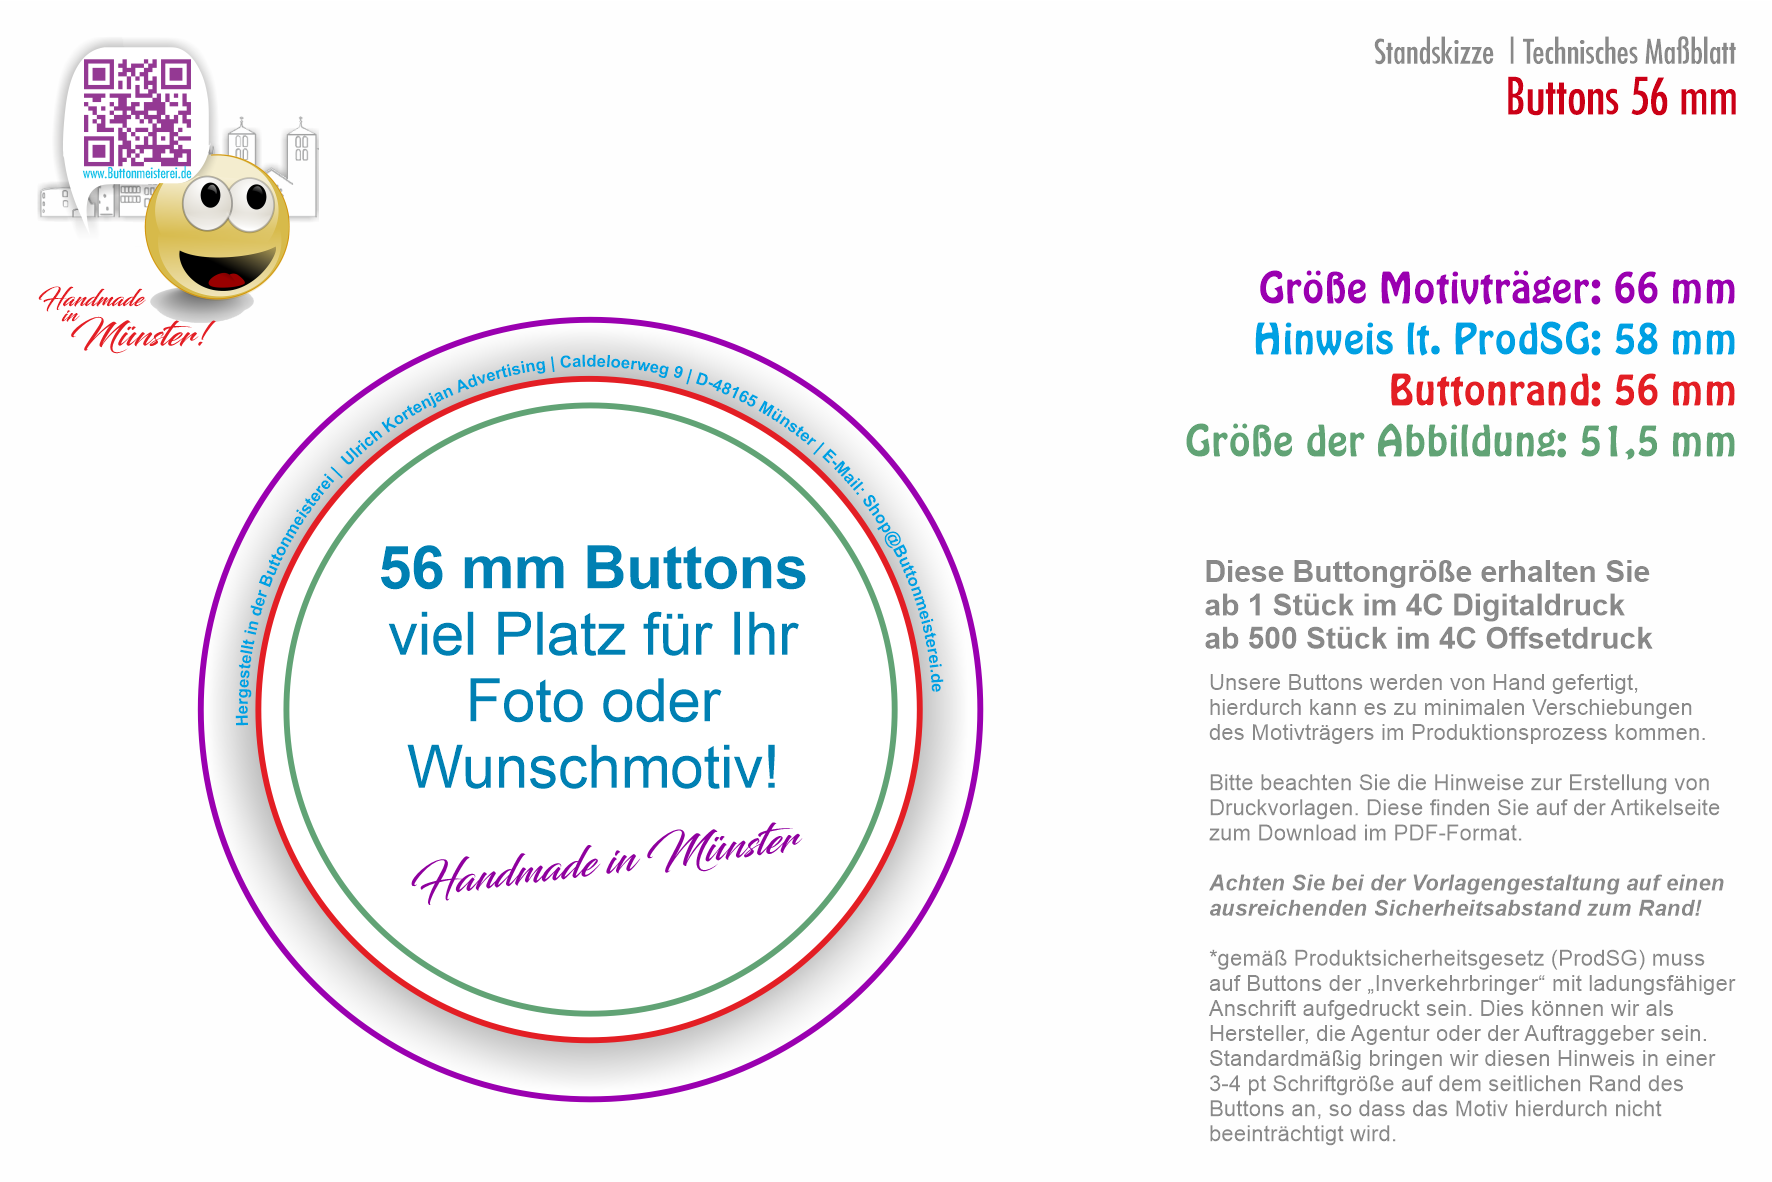 56 mm Button mit Magnet - Der beliebteste Button | individuell gestaltbar 